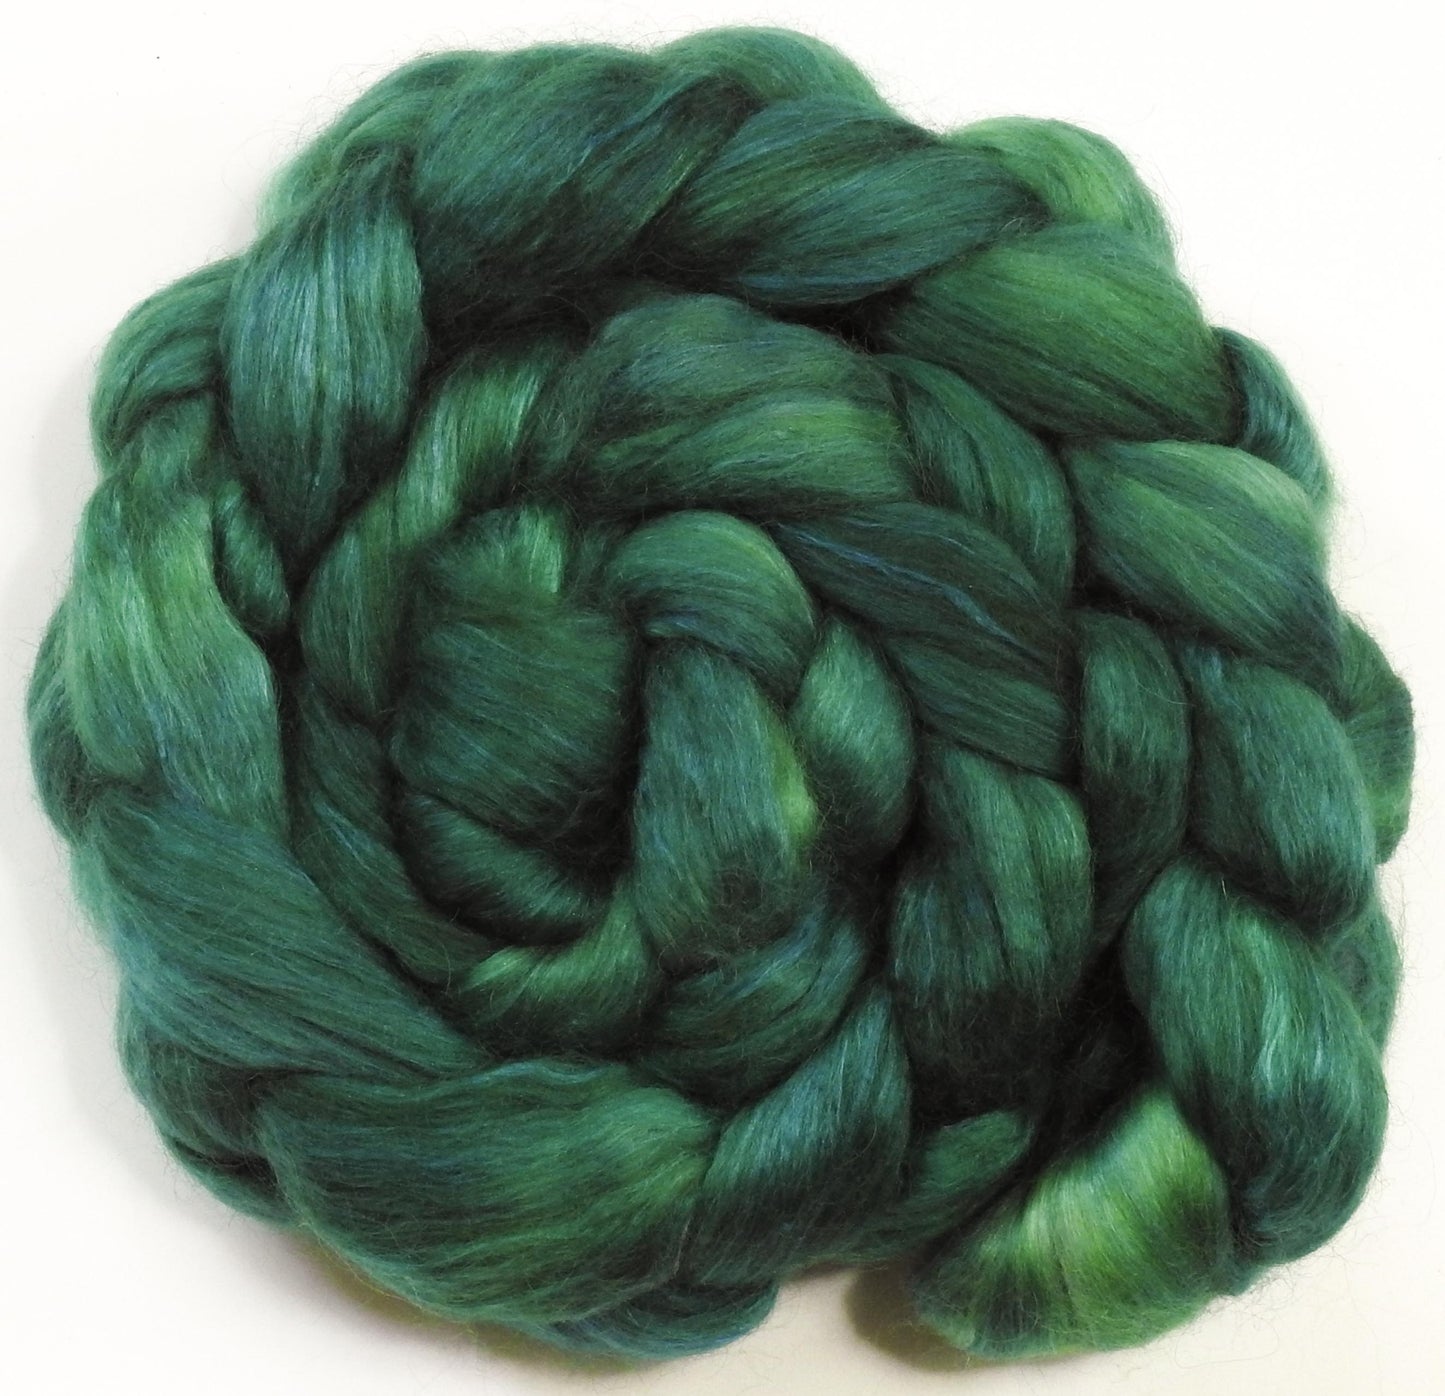 Jade - Batt in a Braid #52- Wensleydale/ Mulberry silk/ Polwarth (60/25/15)